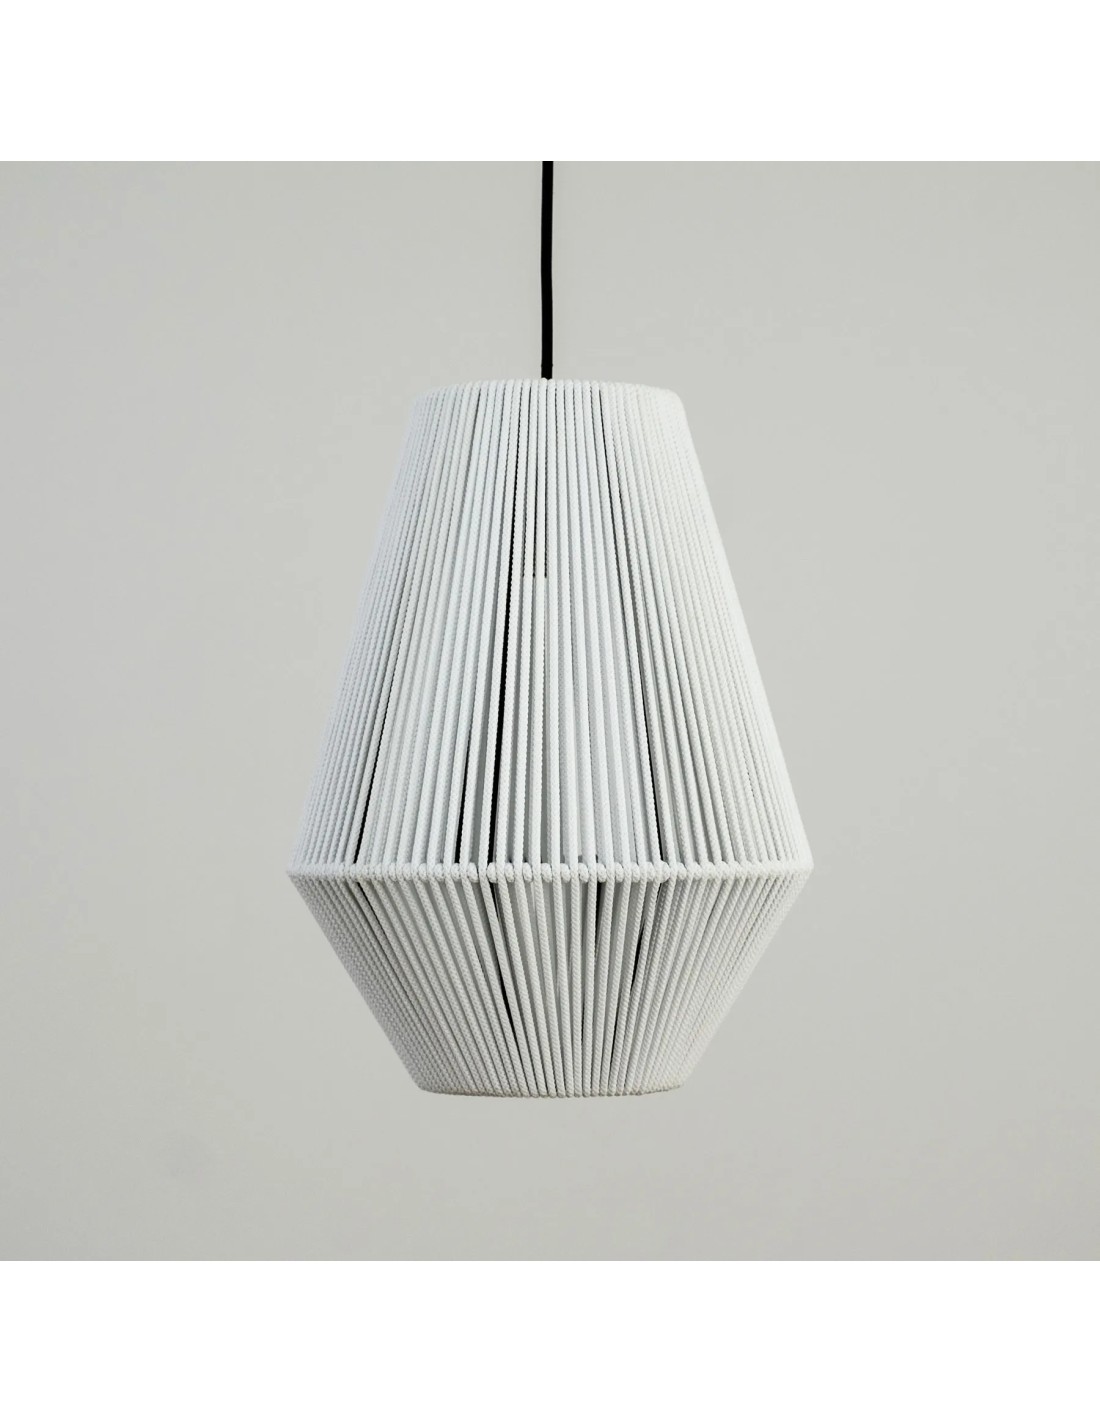 lámparas de techo vintage sencillas combina muy bien con tonos claros